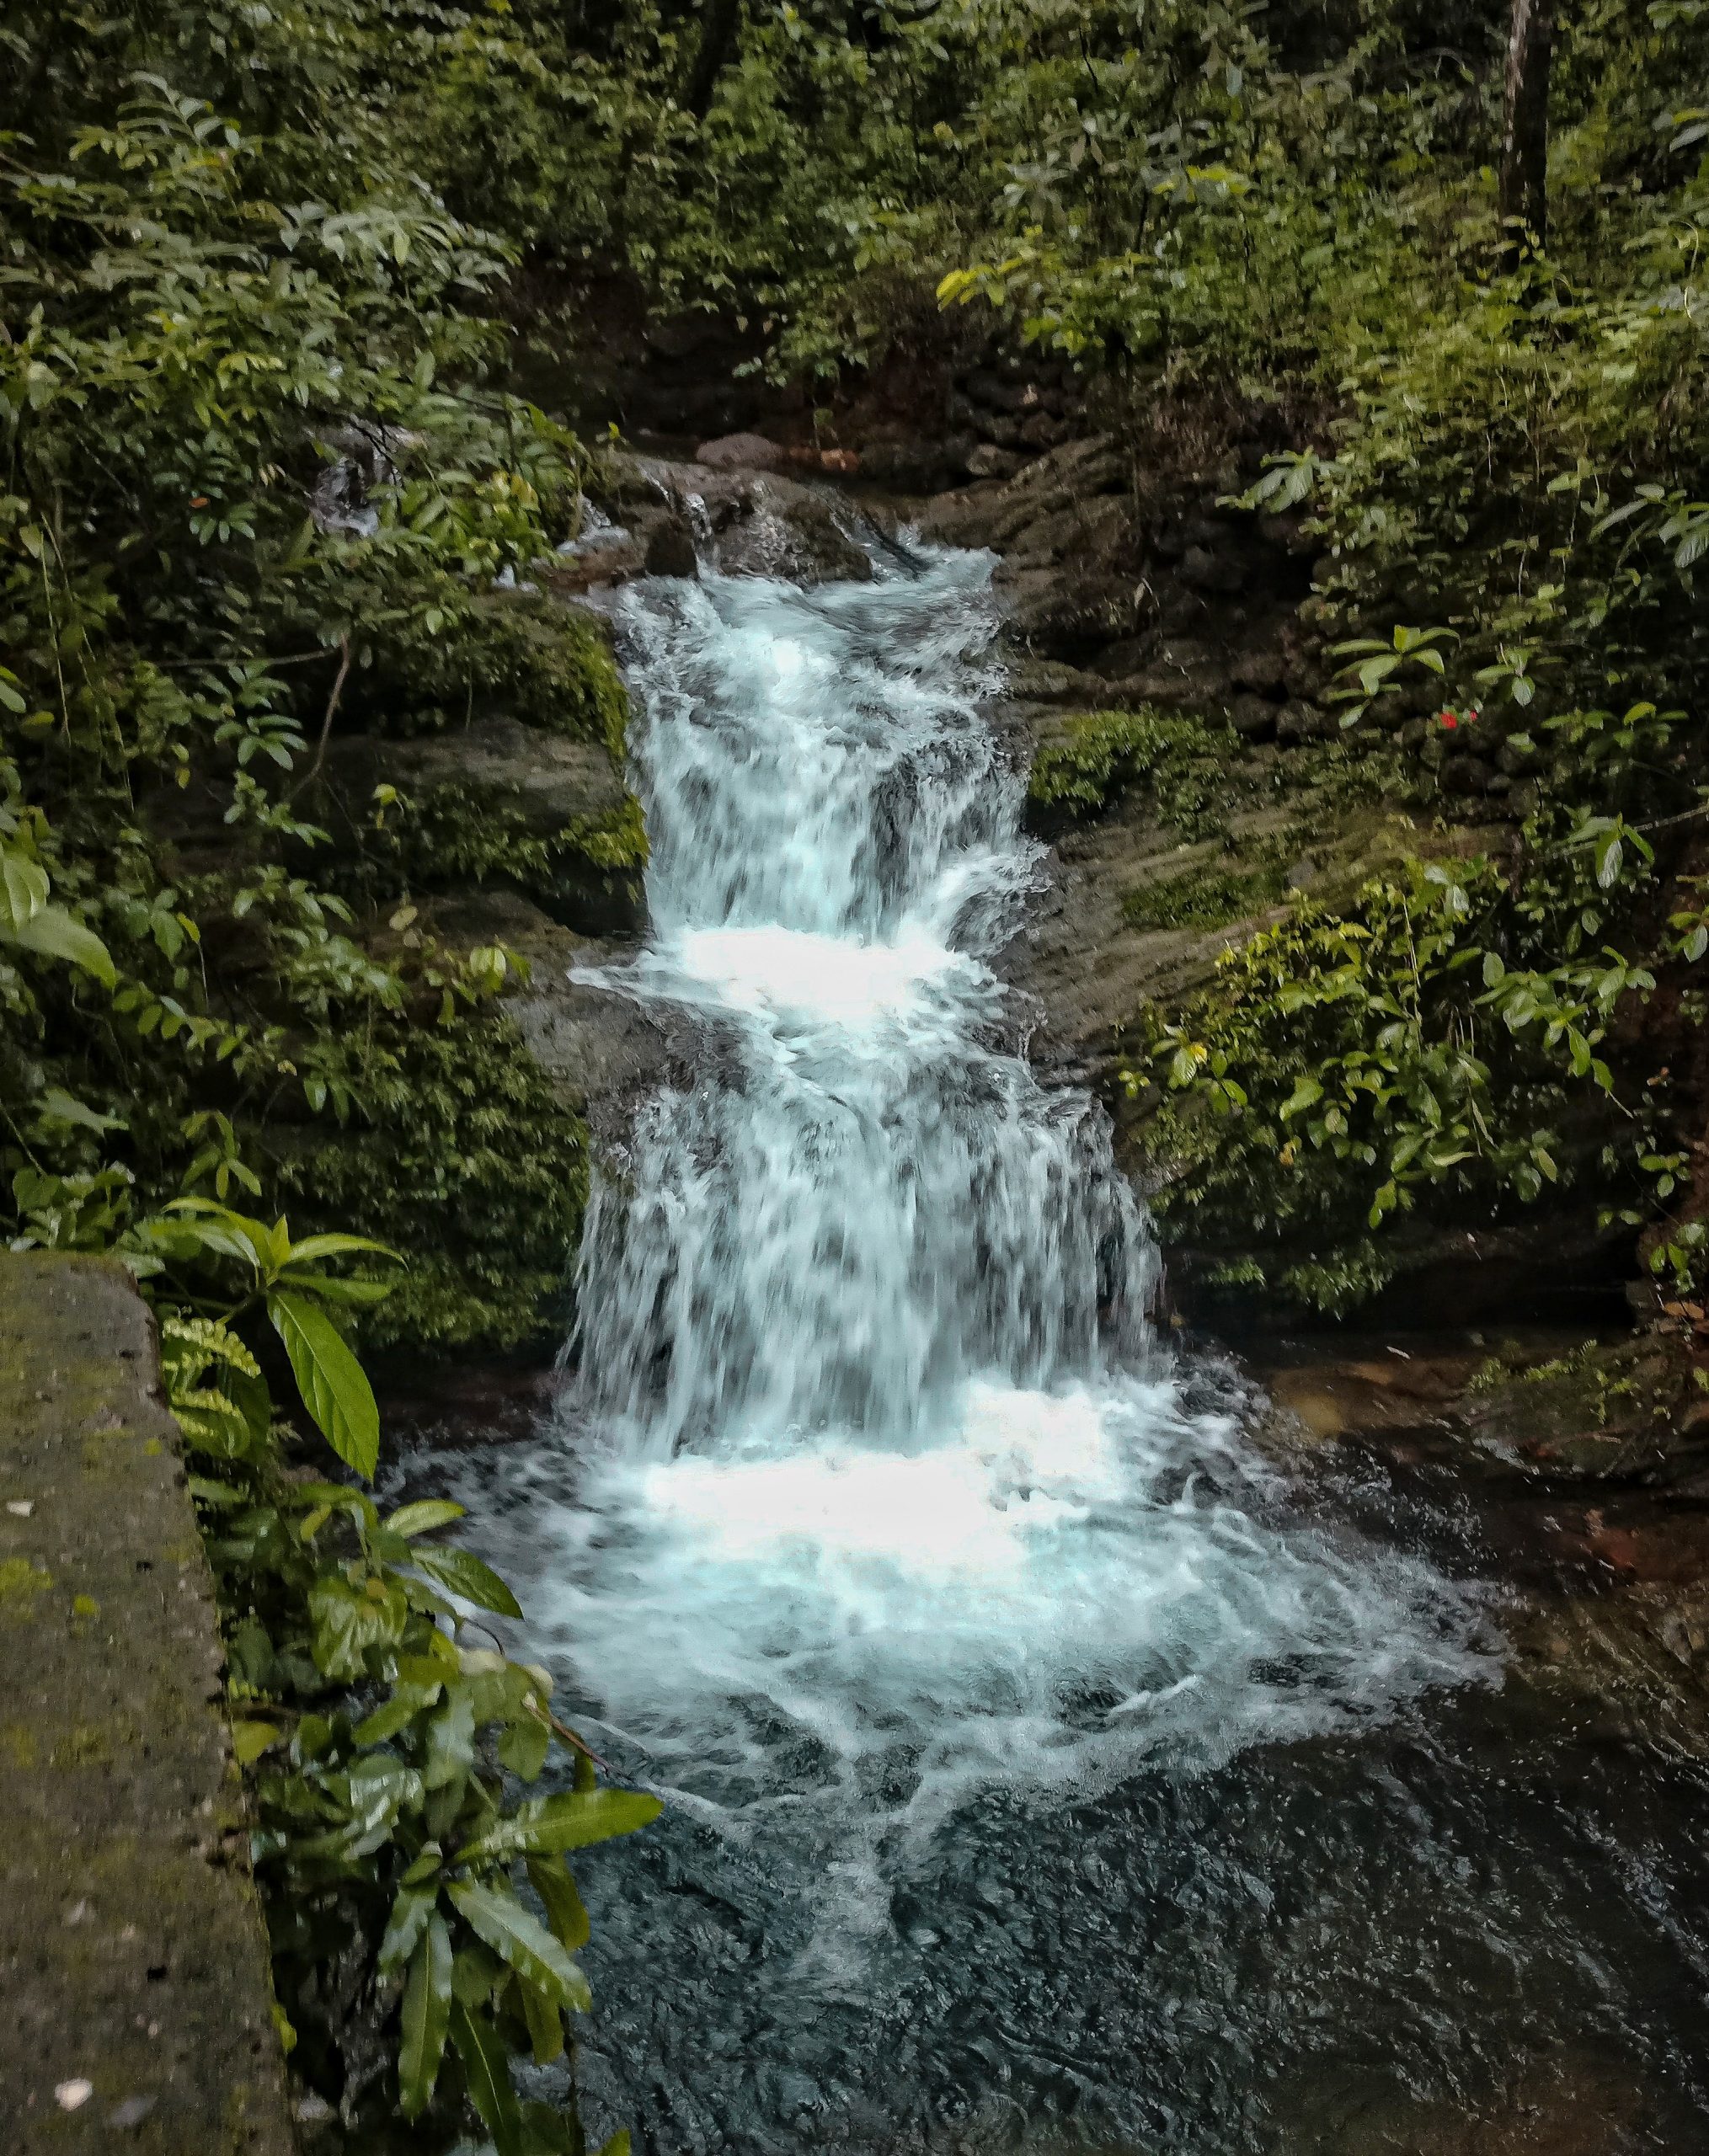 Mini waterfall amidst wilderness.